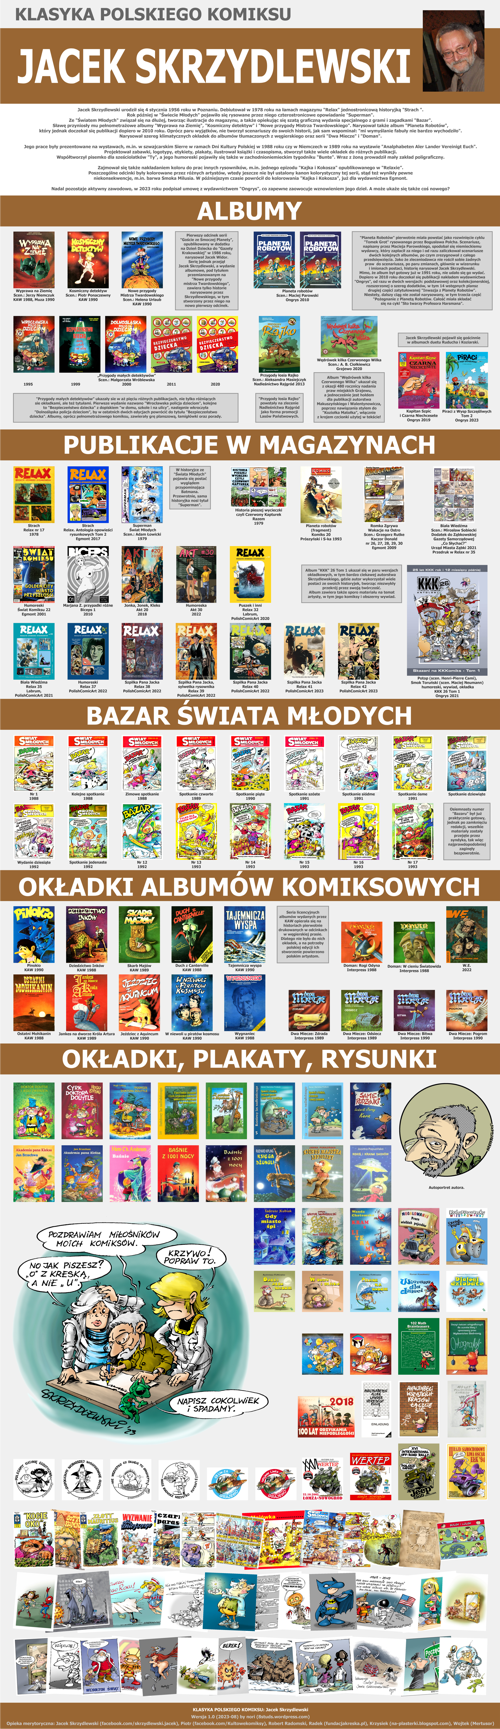 Jak czytac Klasyka Polskiego Komiksu - Jacek Skrzydlewski - Chronologia v10 (MINI)